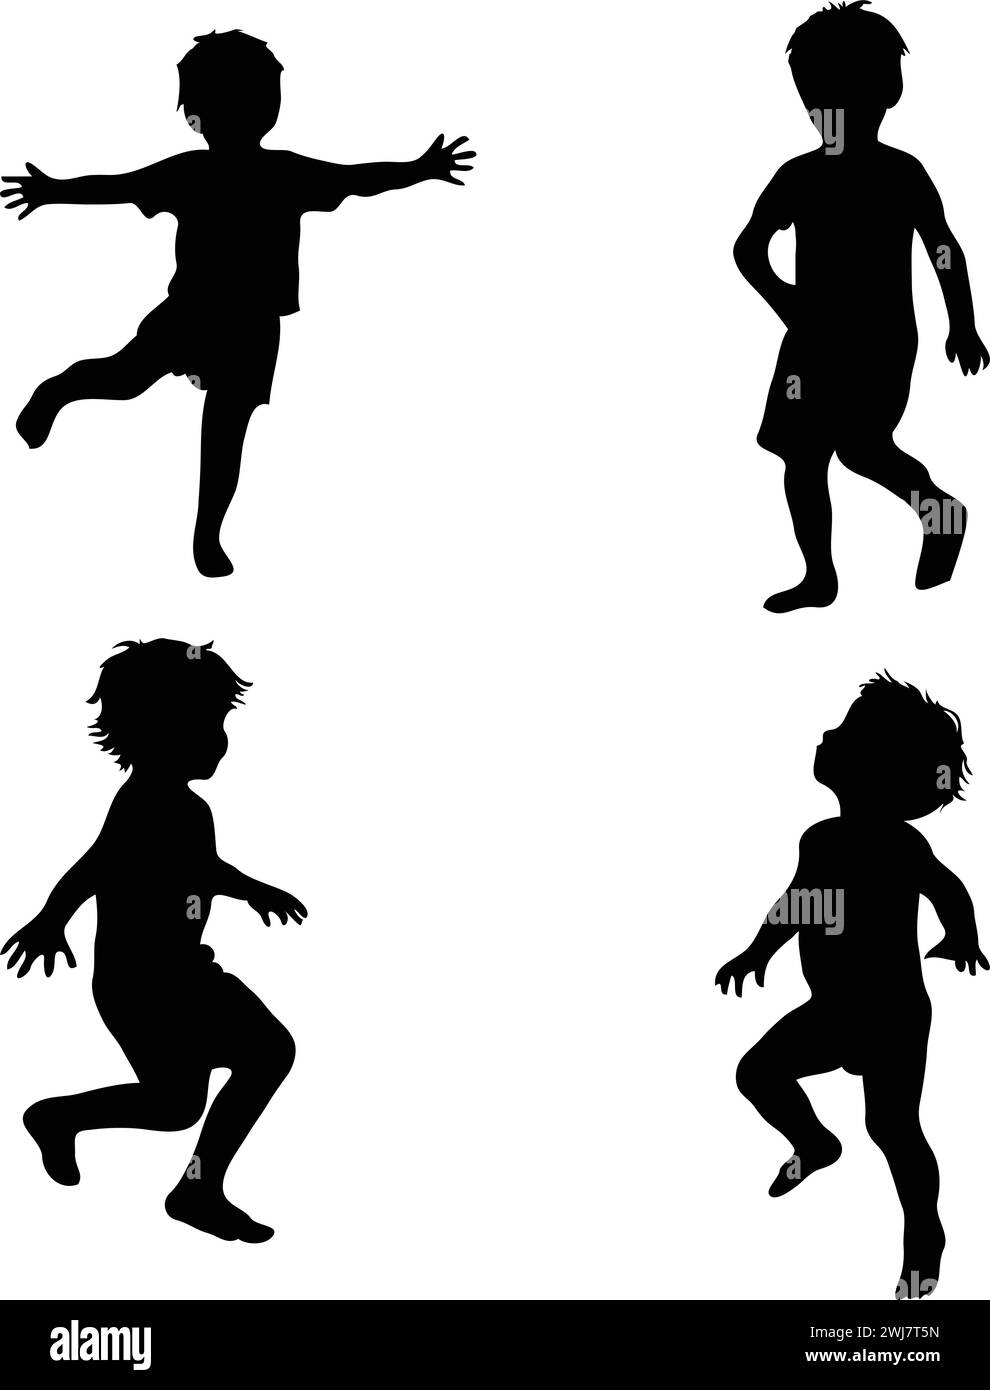 Ensemble de silhouettes d'enfants sur un fond blanc, illustration vectorielle. Illustration de Vecteur